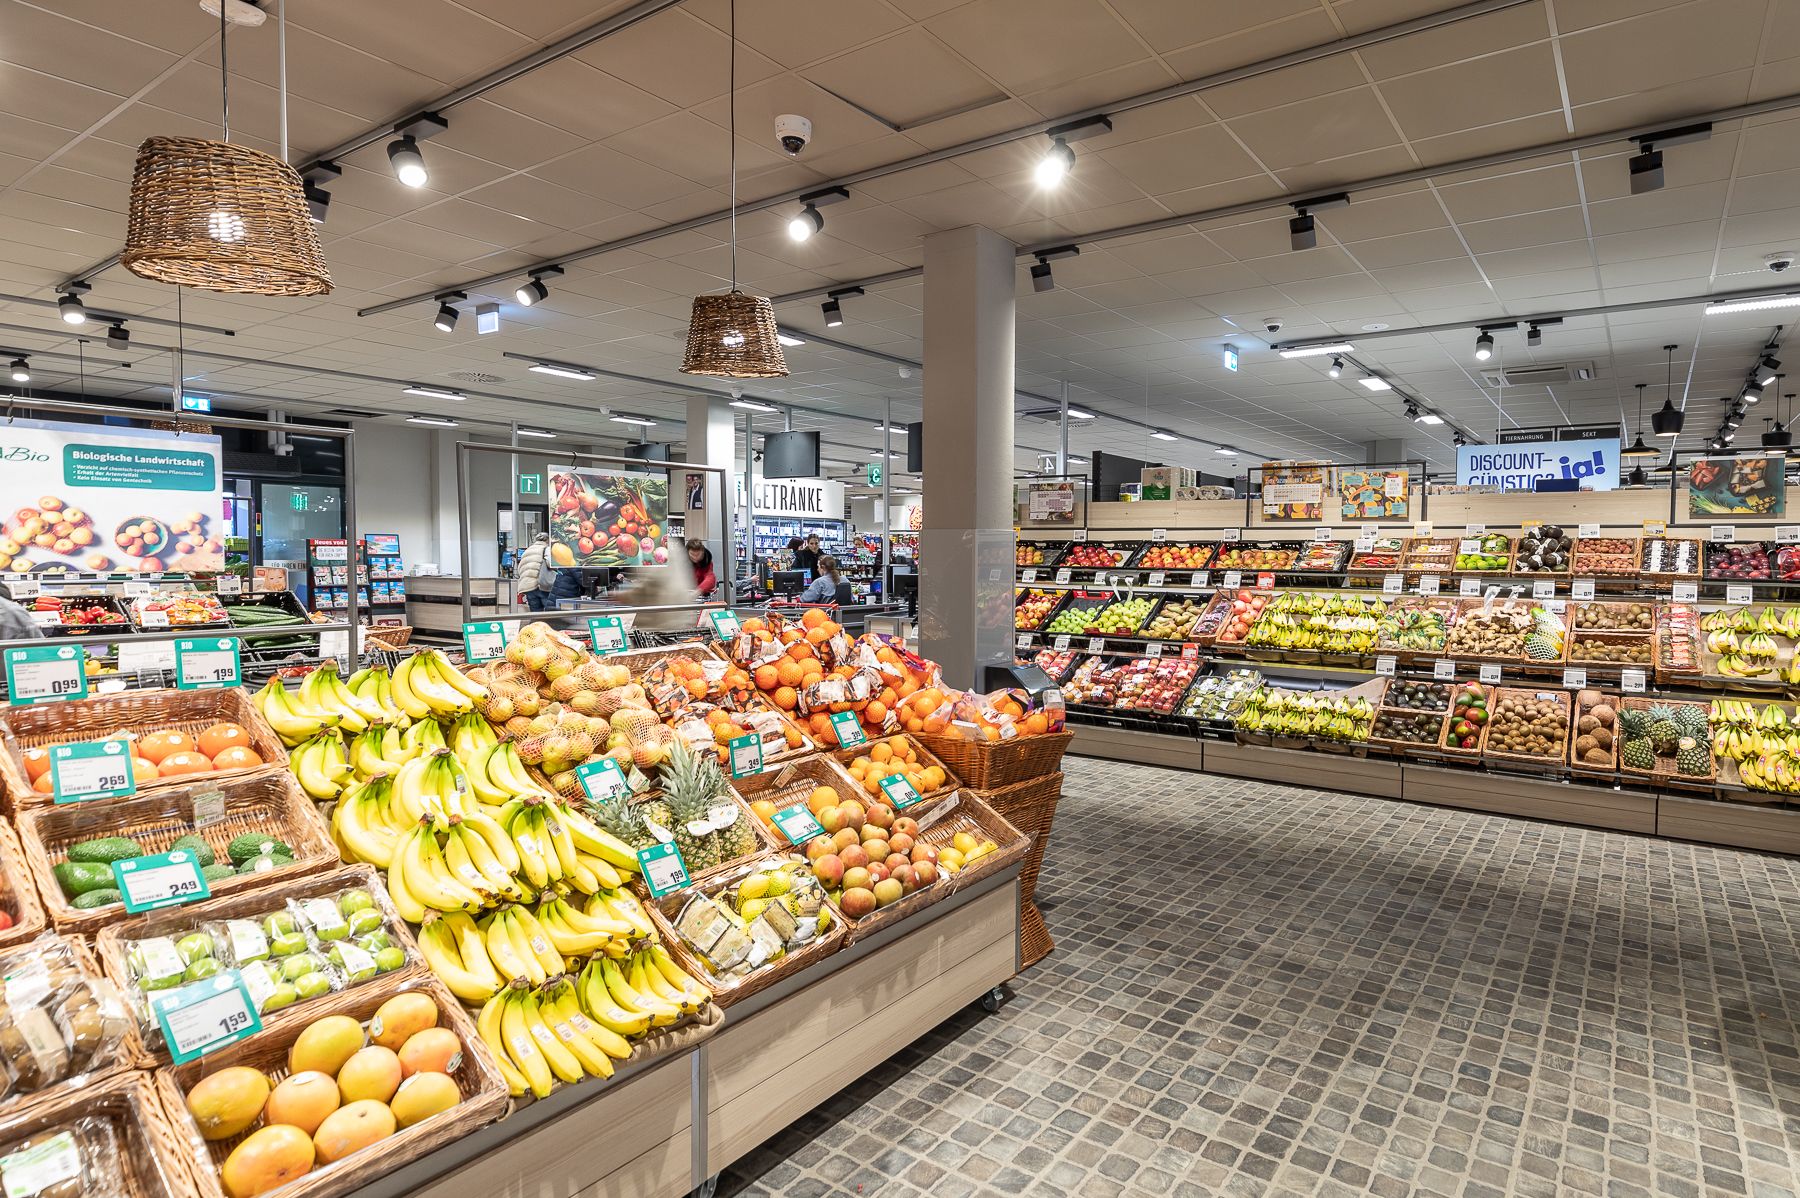 Gleich am Markteingang erwartet Kund:innen eine bunte Obst- und Gemüseabteilung mit zahlreichen Bio-Produkten und Lebensmitteln aus der Region / Foto: REWE Markt Düsseldorf Bilk ©REWE